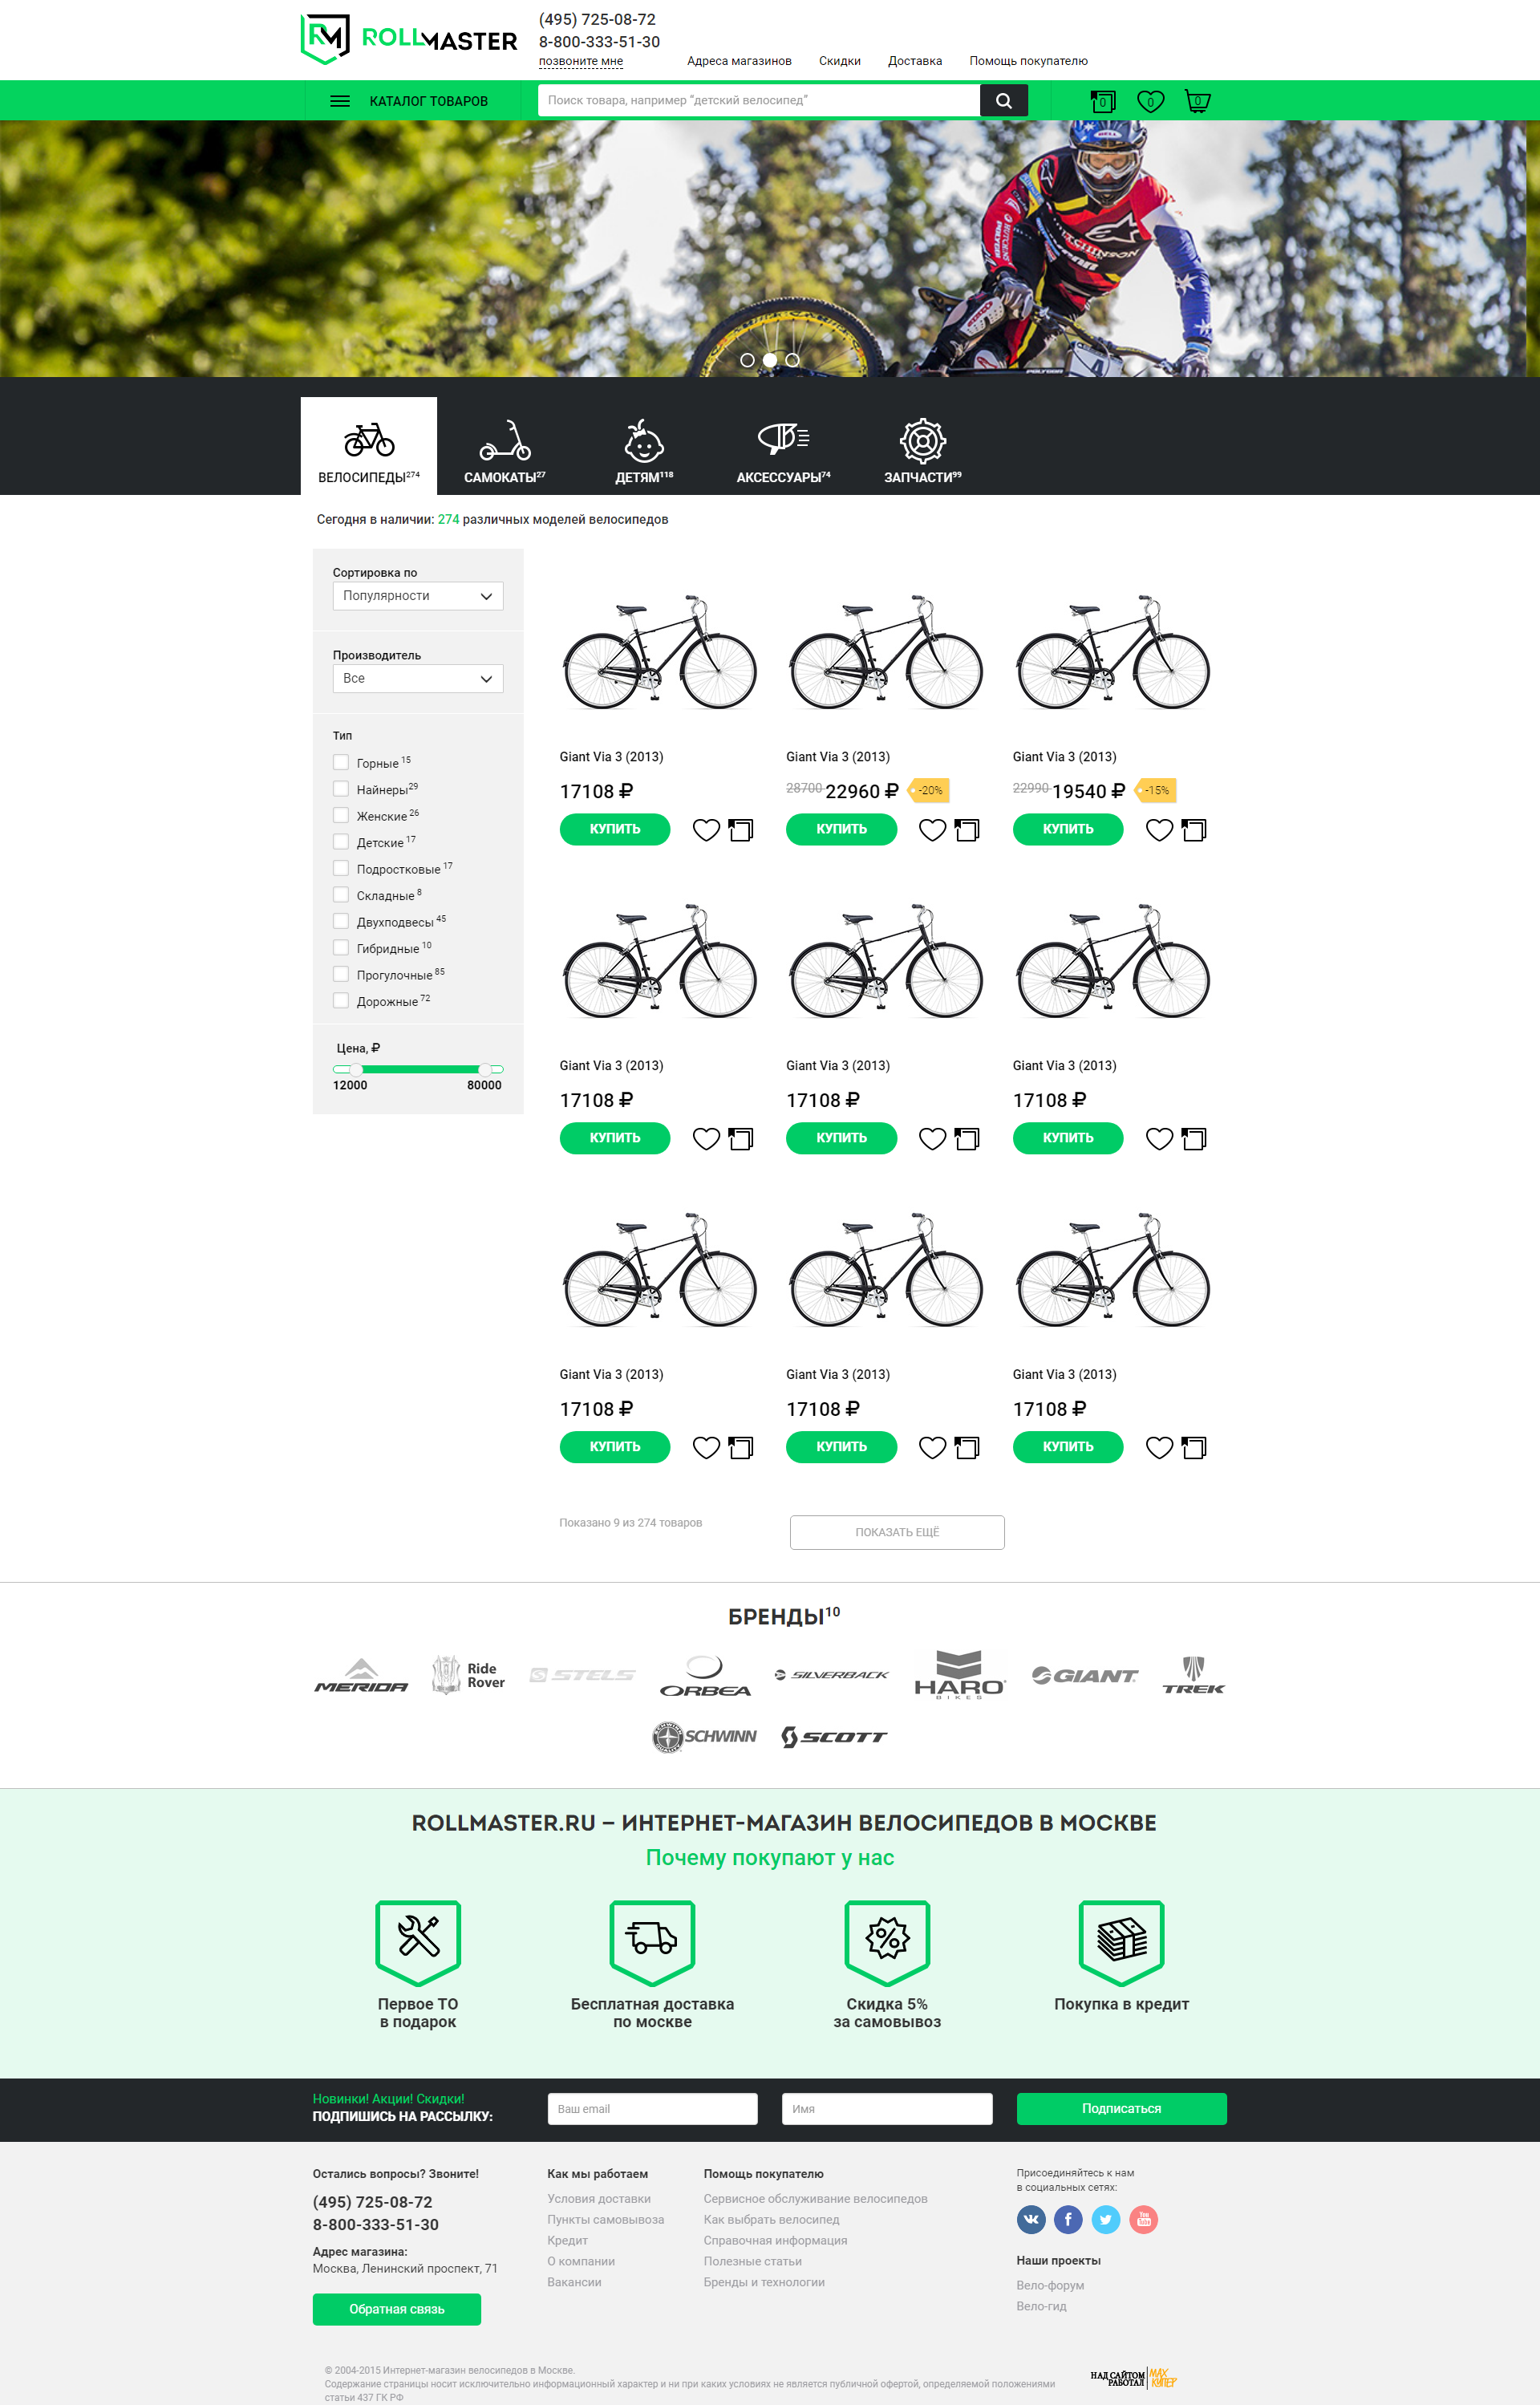 Адаптивная responsive верстка интернет магазина велосипедов 